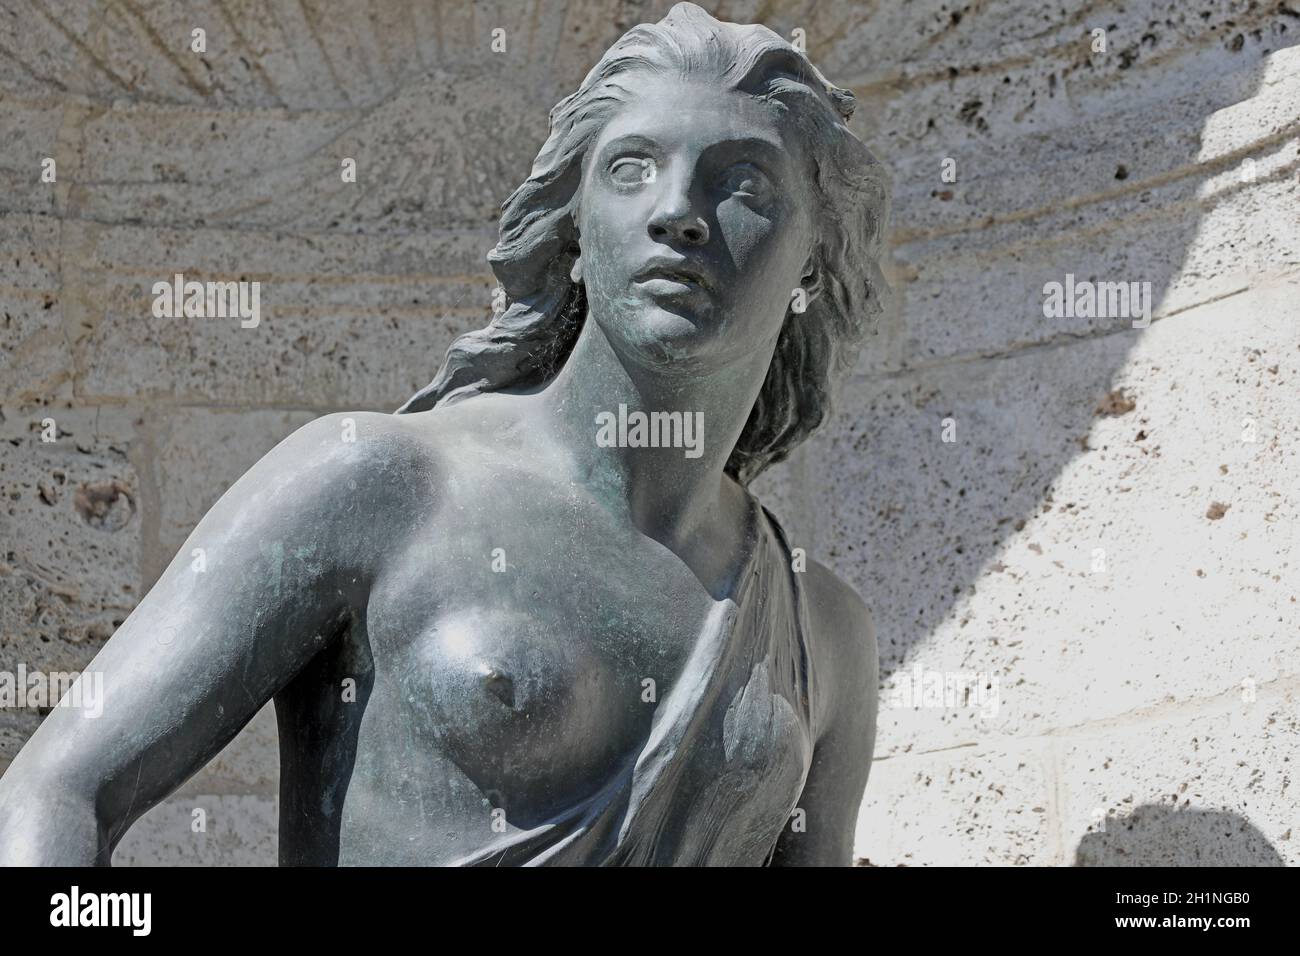 Detailaufnahme.Die weibliche Figur stellt die 'Junge Jägerin' am Hubertussbrunnen in München-Neuhausen-Nymphenburg dar.Adolf von Hildebrand 1 Banque D'Images